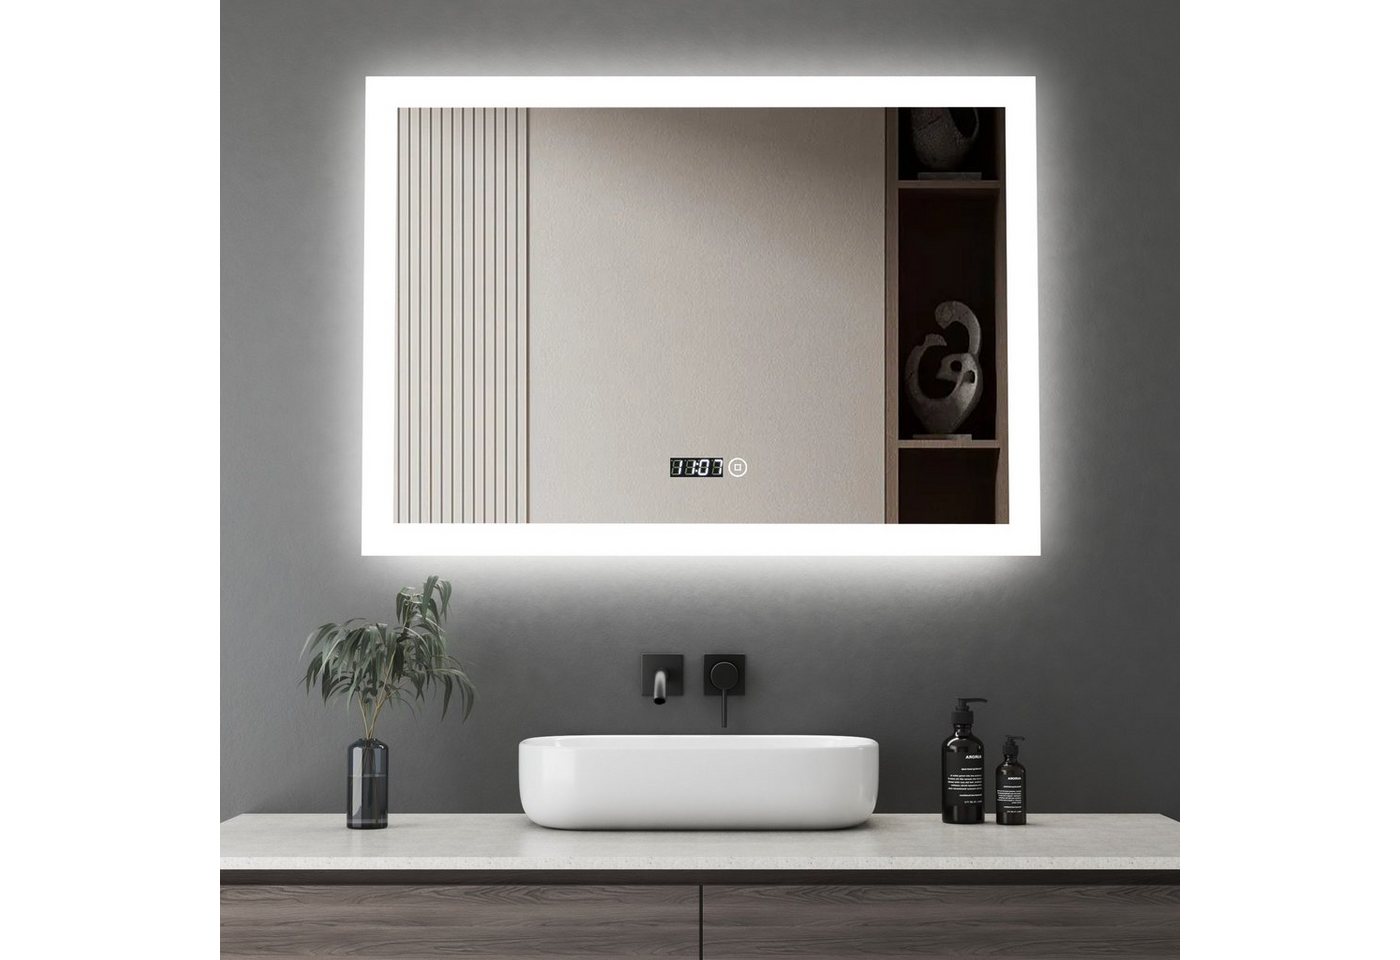 WDWRITTI Wandspiegel Led Badspiegel 80x60 mit Uhr 3Lichtfarben Dimmbar Speicherfunktion (Spiegel mit beleuchtung, Kalt/Neutral/Warmweiß), Touch, Wandschalter, Energiesparend von WDWRITTI